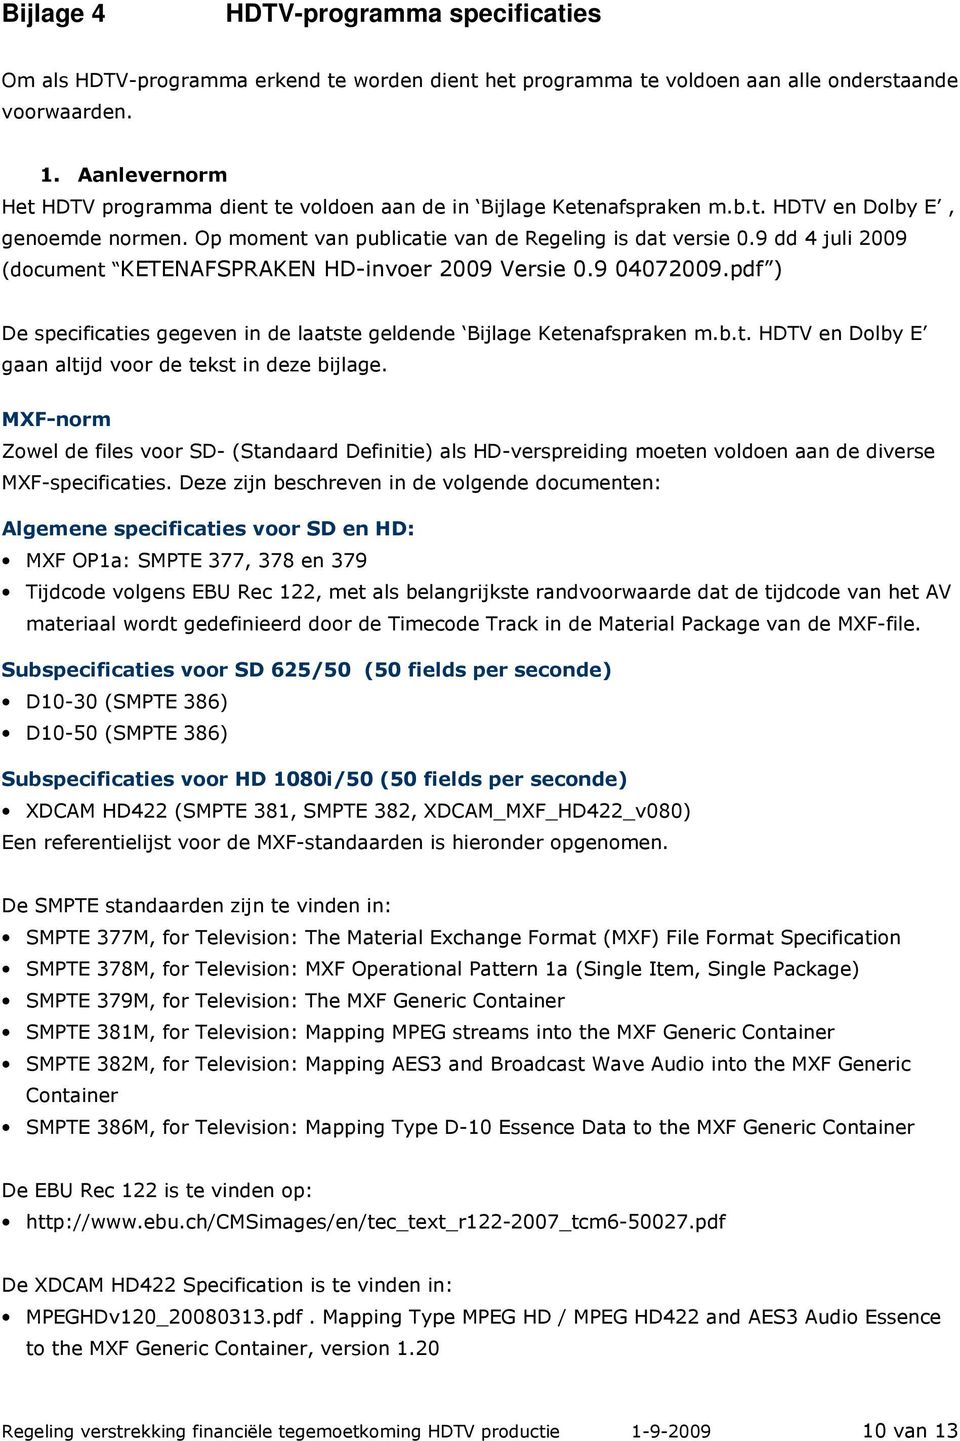 9 dd 4 juli 2009 (document KETENAFSPRAKEN HD-invoer 2009 Versie 0.9 04072009.pdf ) De specificaties gegeven in de laatste geldende Bijlage Ketenafspraken m.b.t. HDTV en Dolby E gaan altijd voor de tekst in deze bijlage.